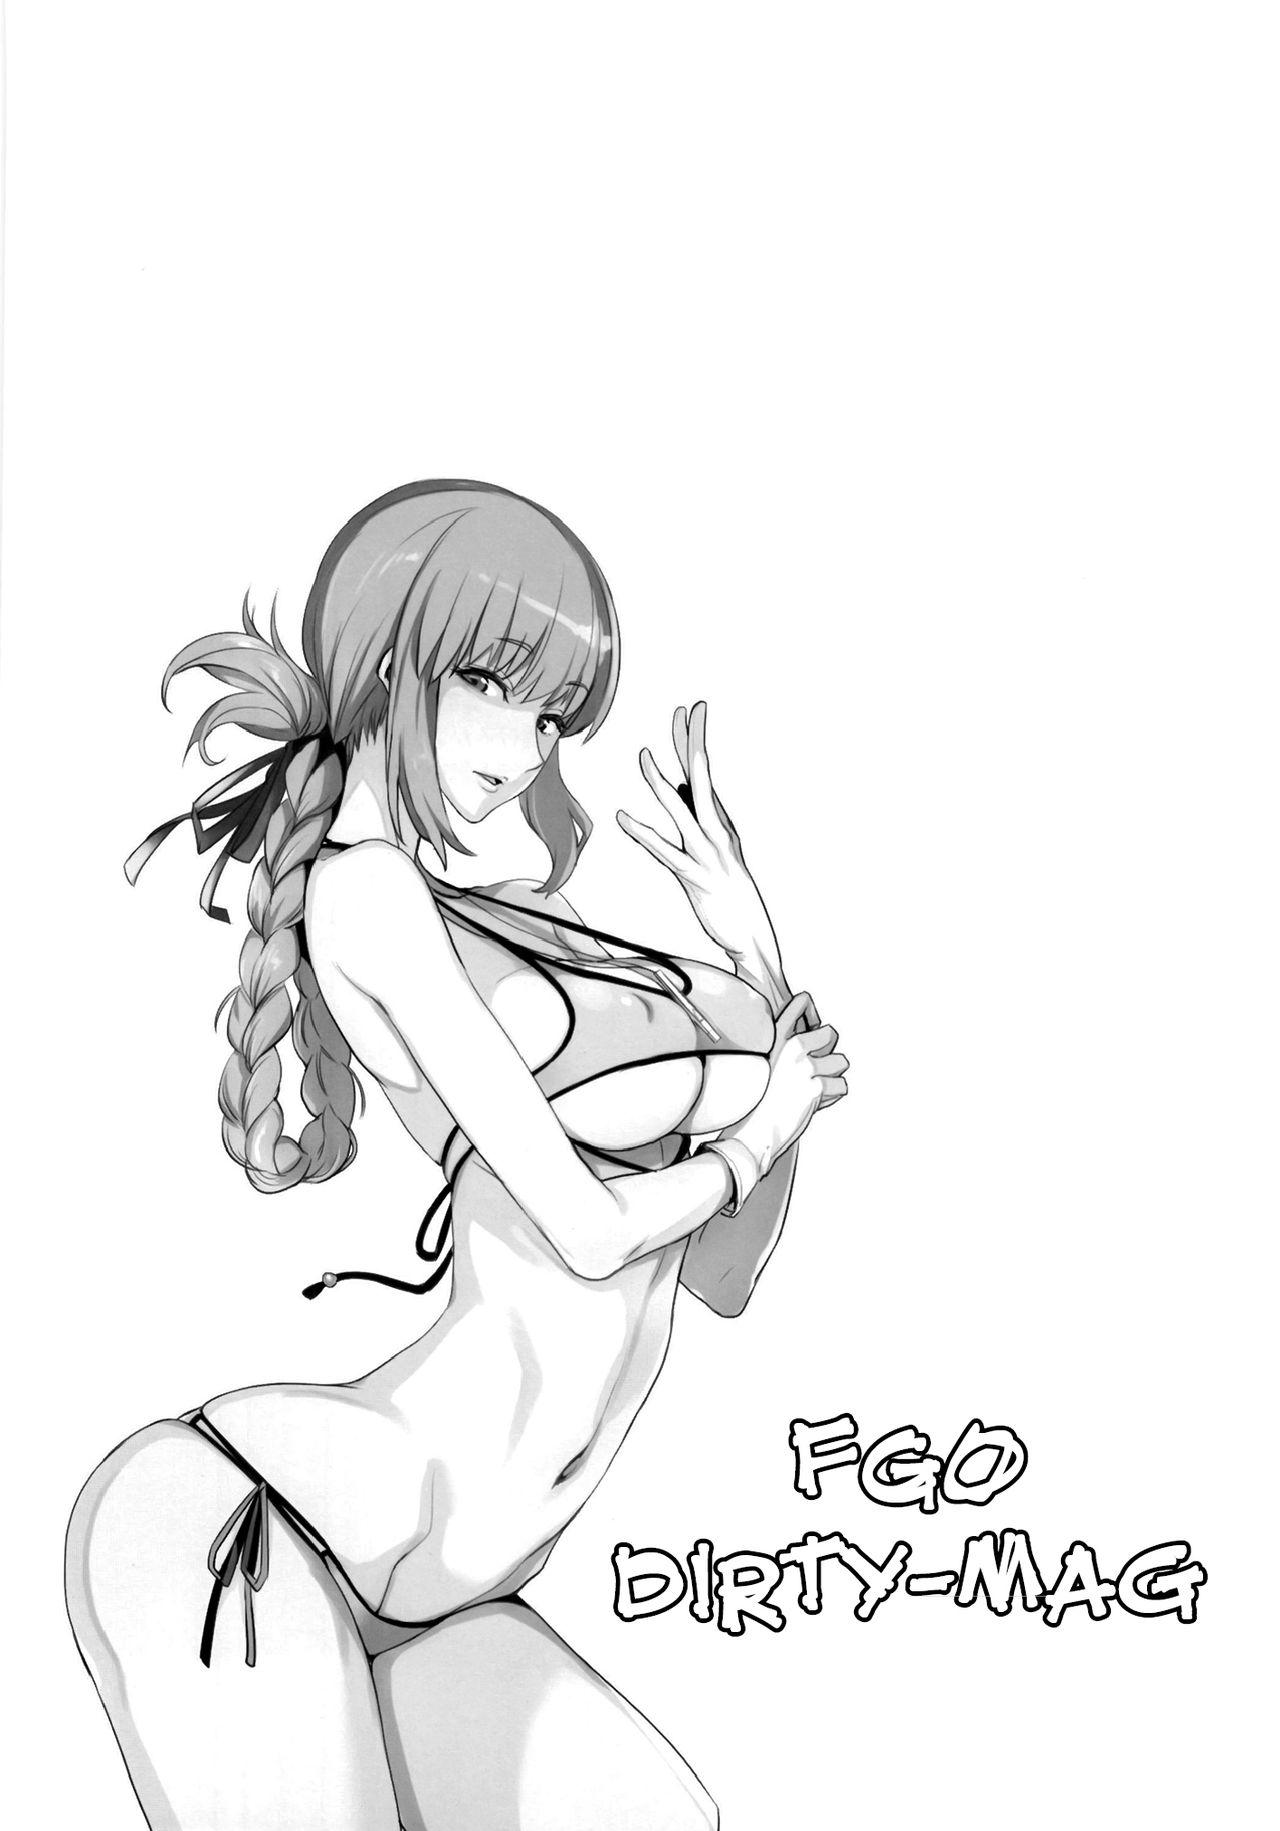 FGO no Erohon | FGO Dirty-Mag 21